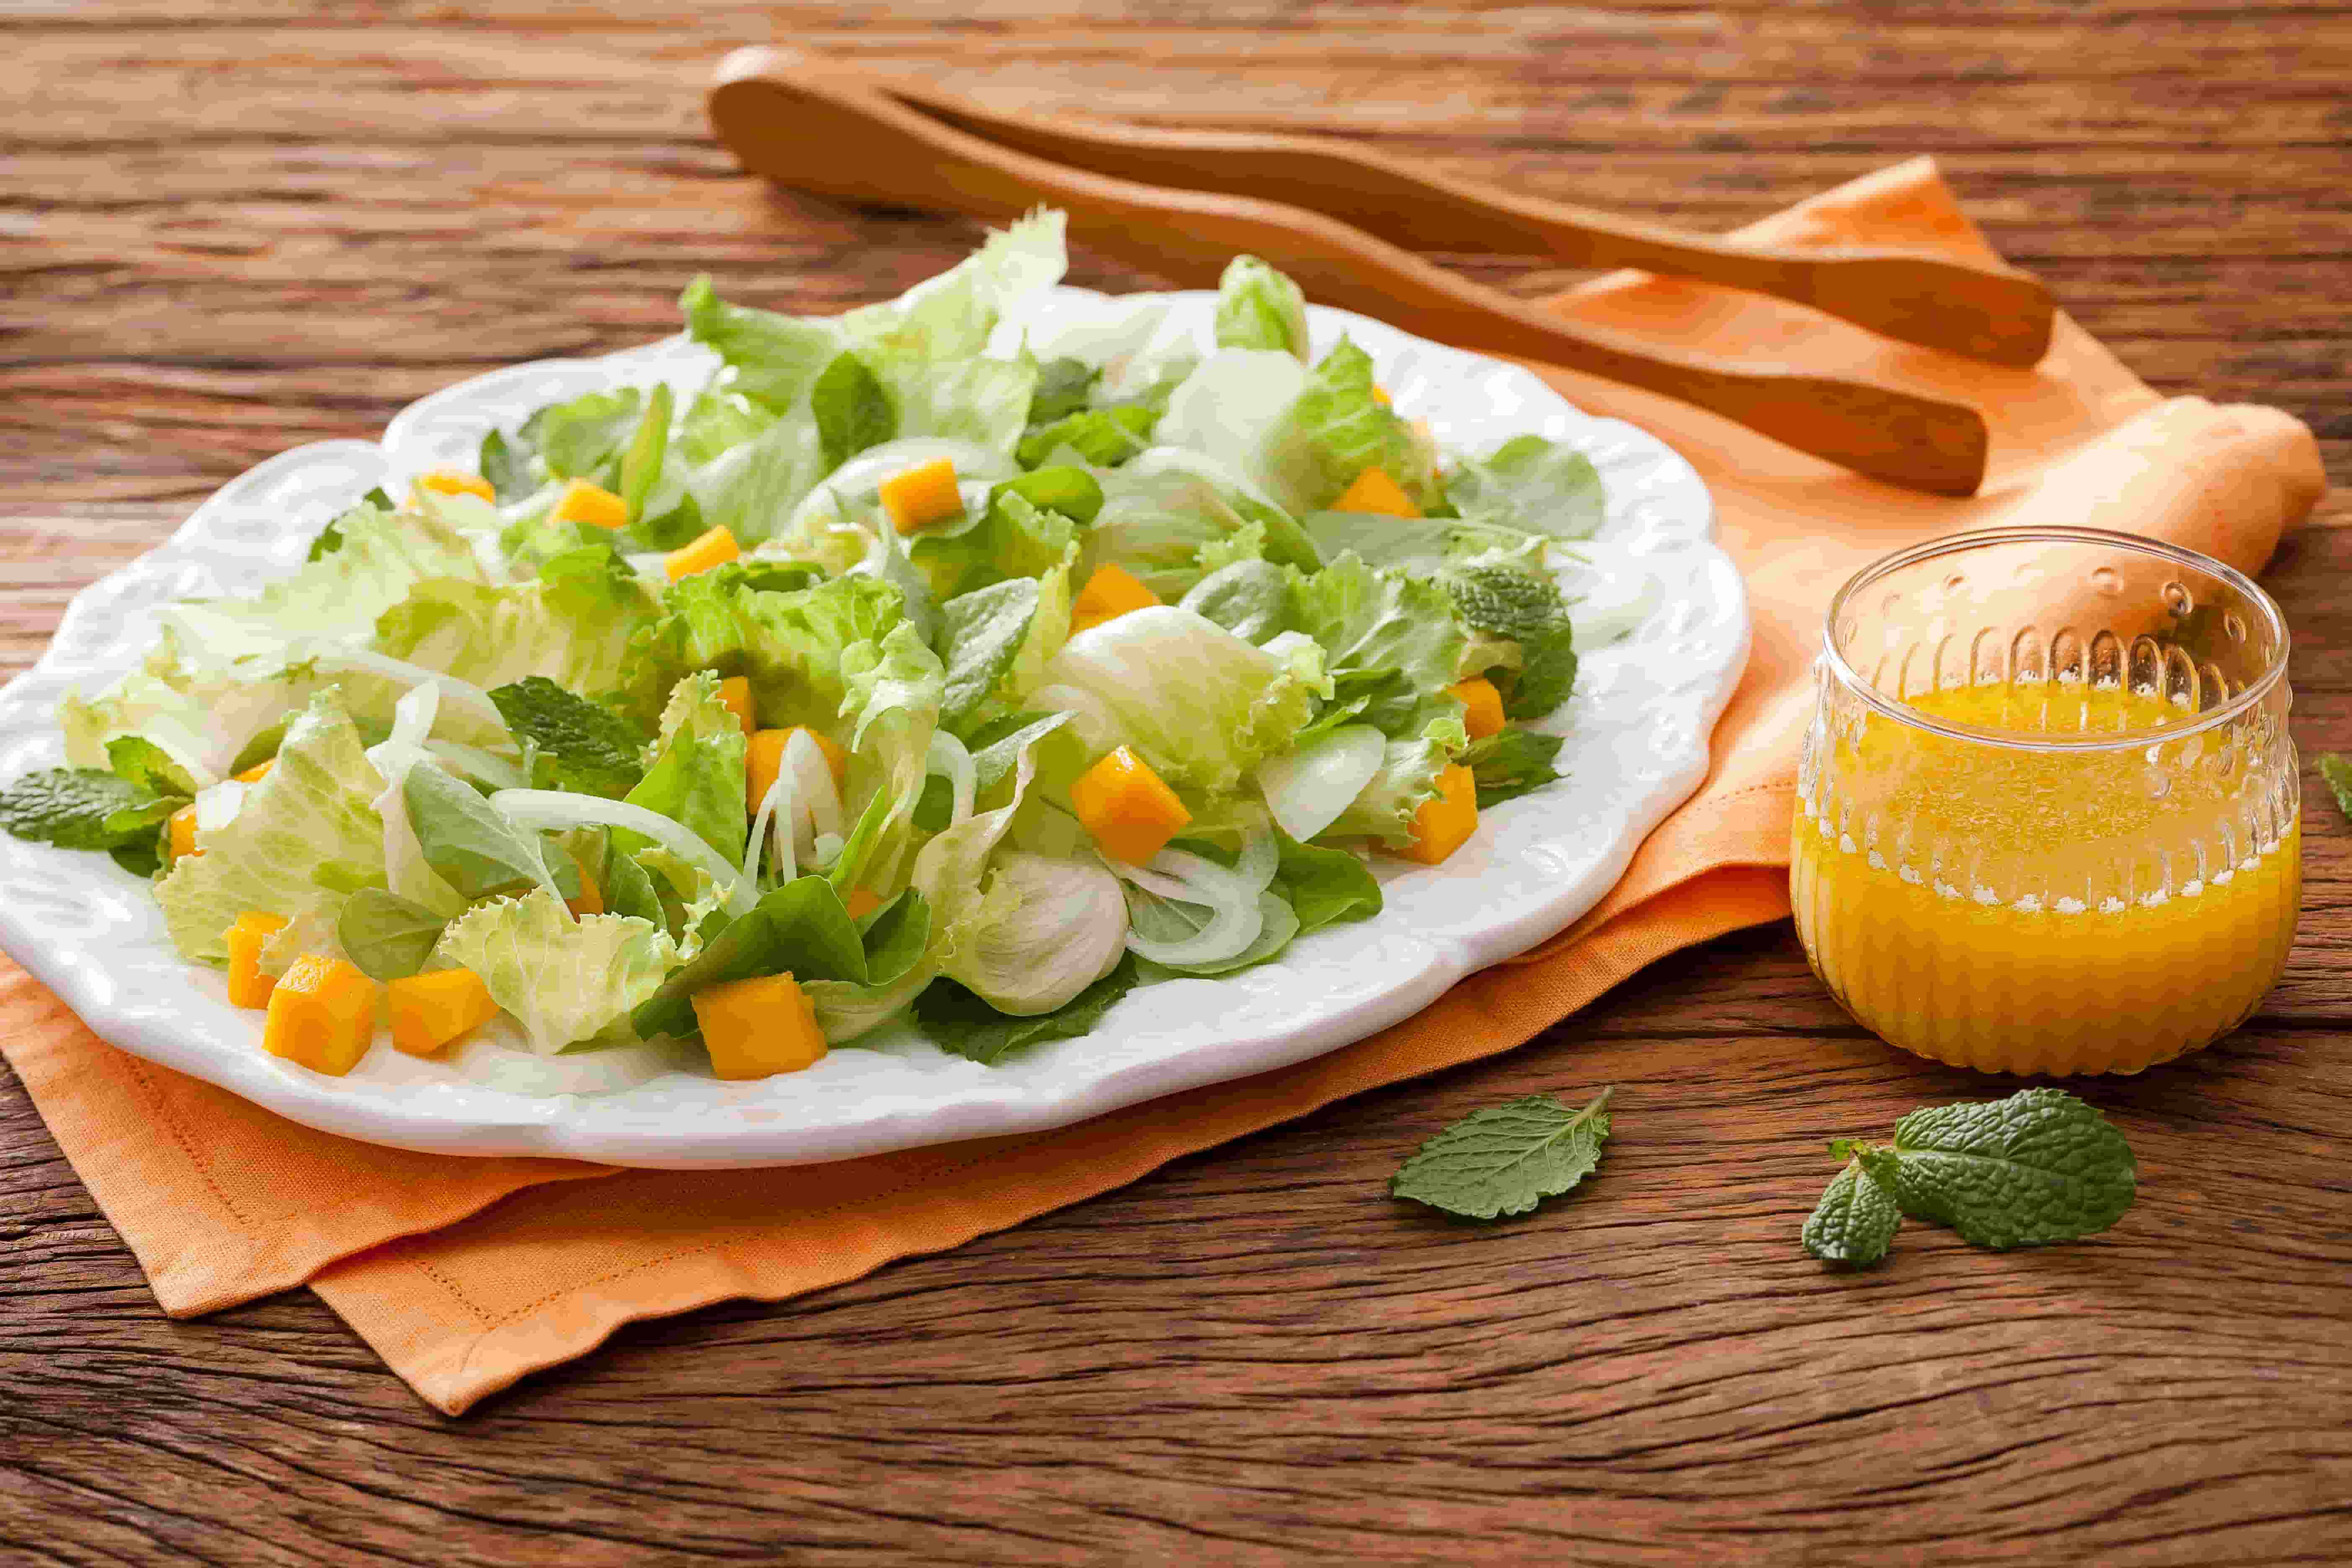 foto em tons de laranja, verde e marrom de uma bancada vista de frente, contém um prato com a salada e pedaços de manga